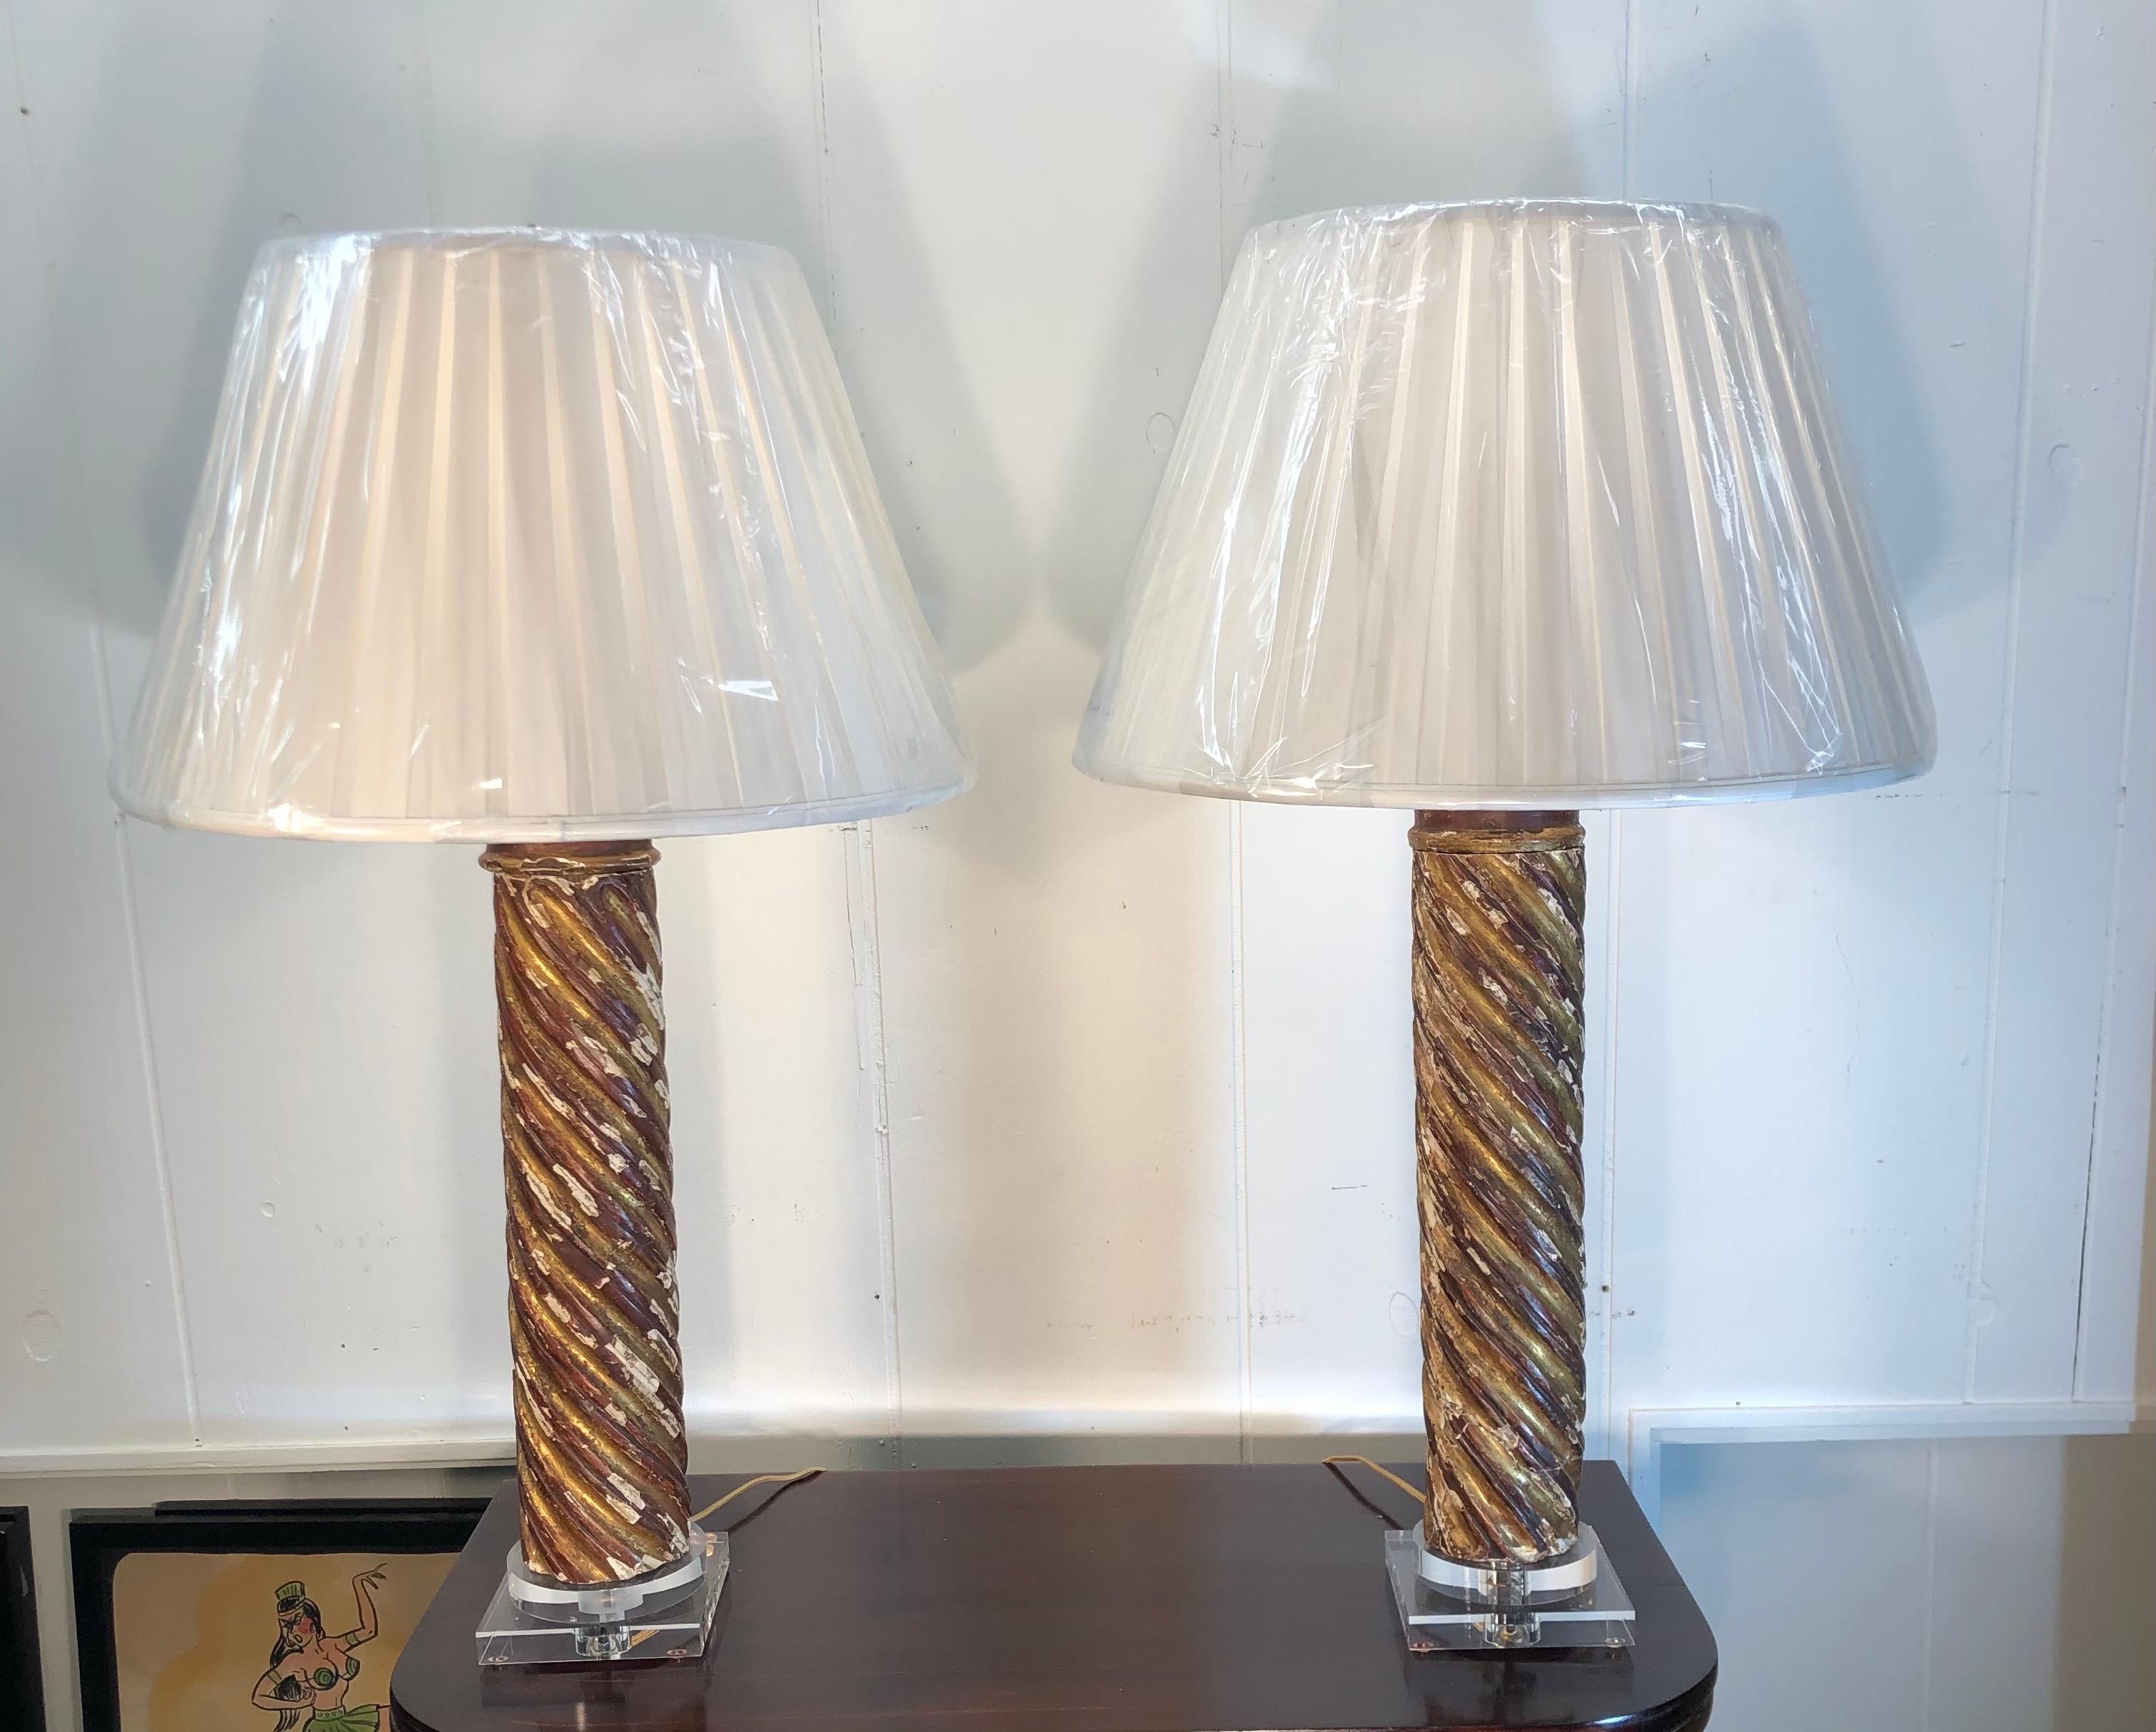 Paire de lampes à colonnes italiennes en bois doré du milieu du XVIIIe siècle sur des bases en lucite. Il y a un total de quatre lampes disponibles qui seront vendues par paires.